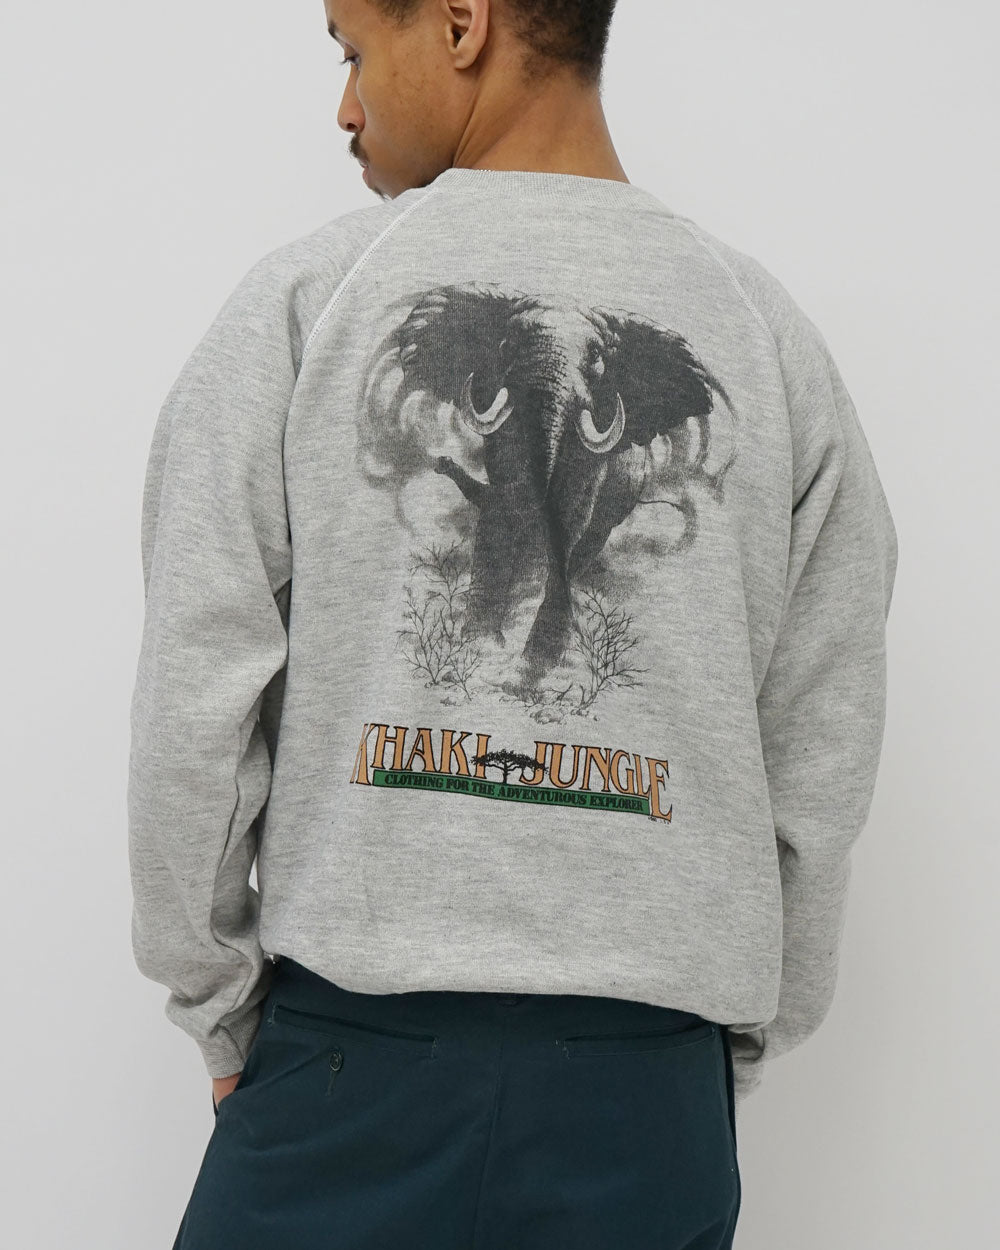 Printed Sweatshirts / Elephant